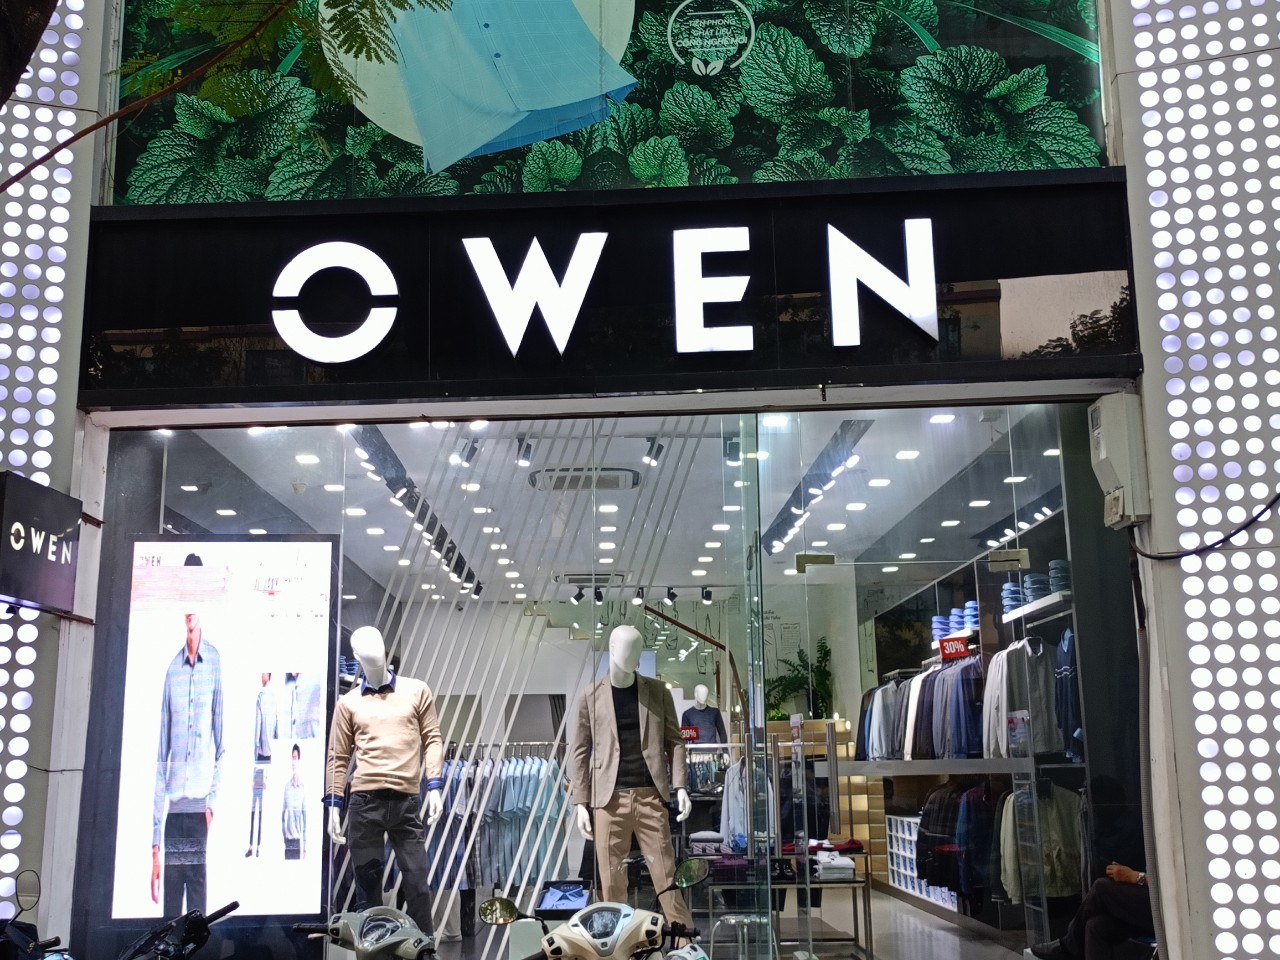 Hàng hóa không chứng nhận hợp quy không phải của OWEN